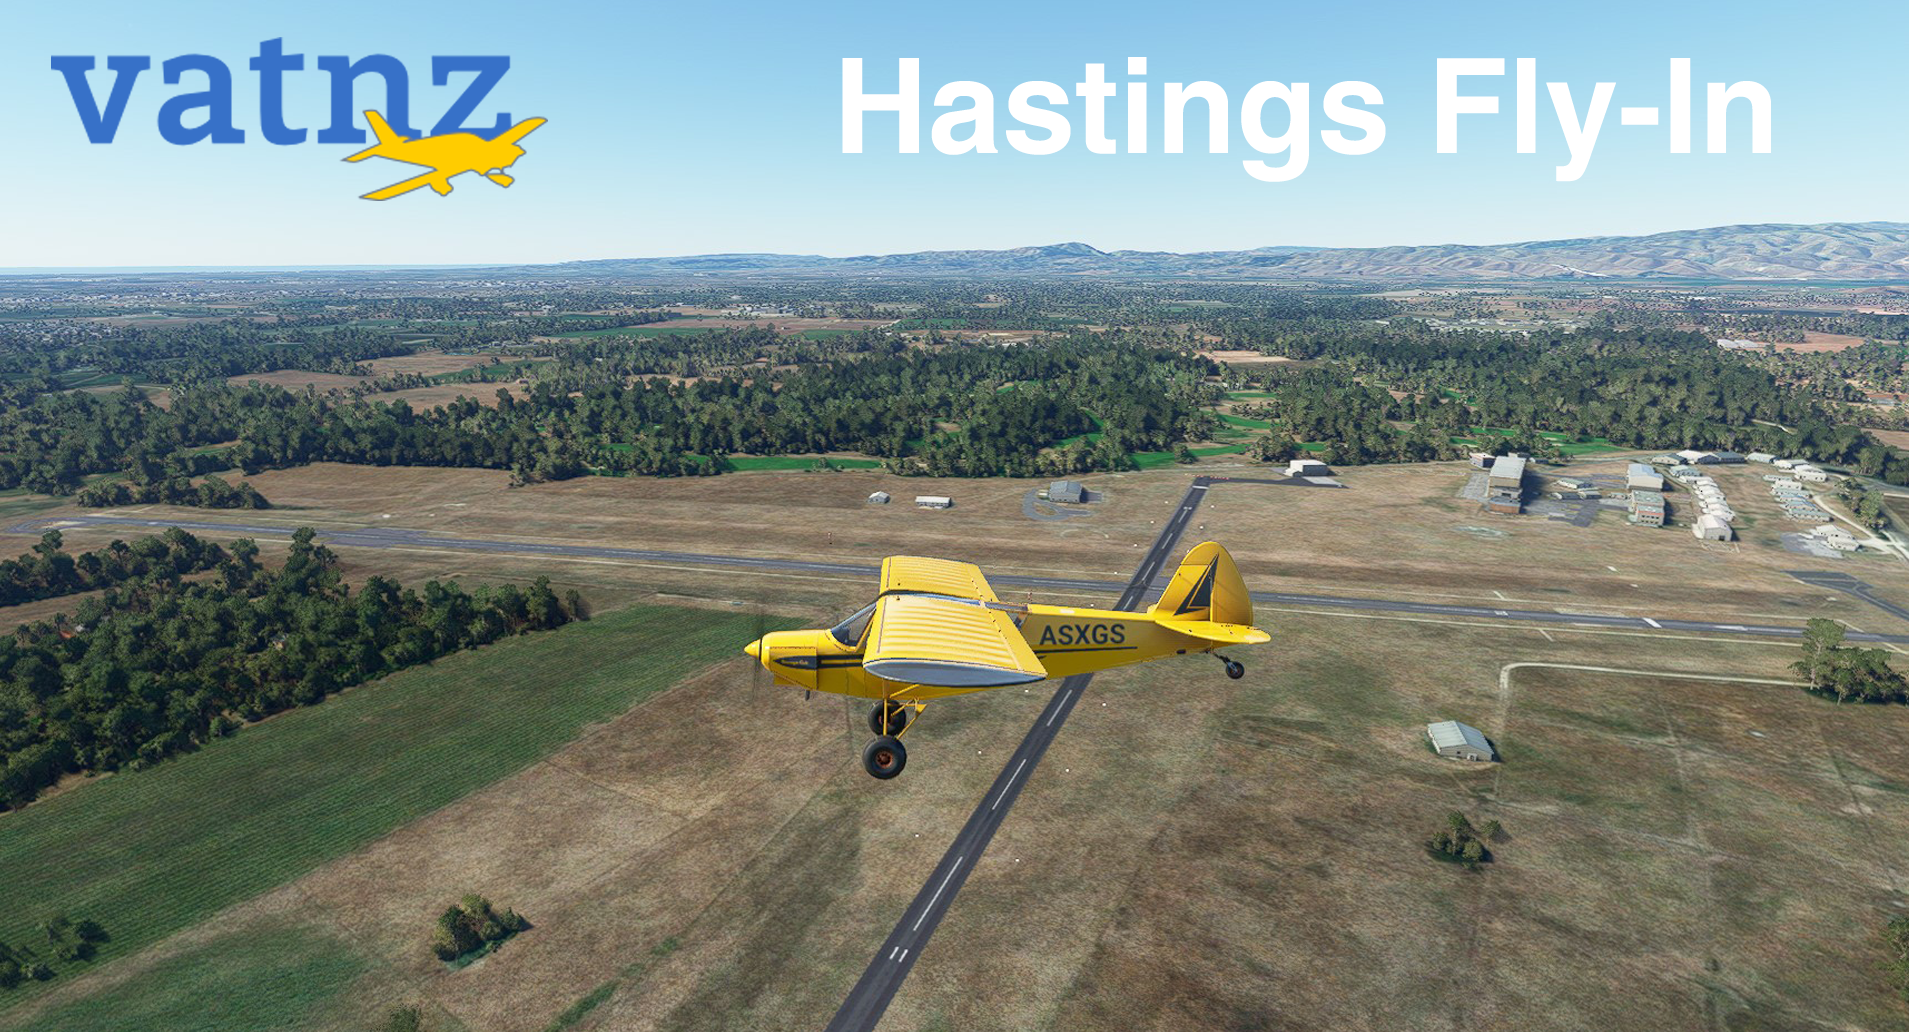 Hastings Fly-in